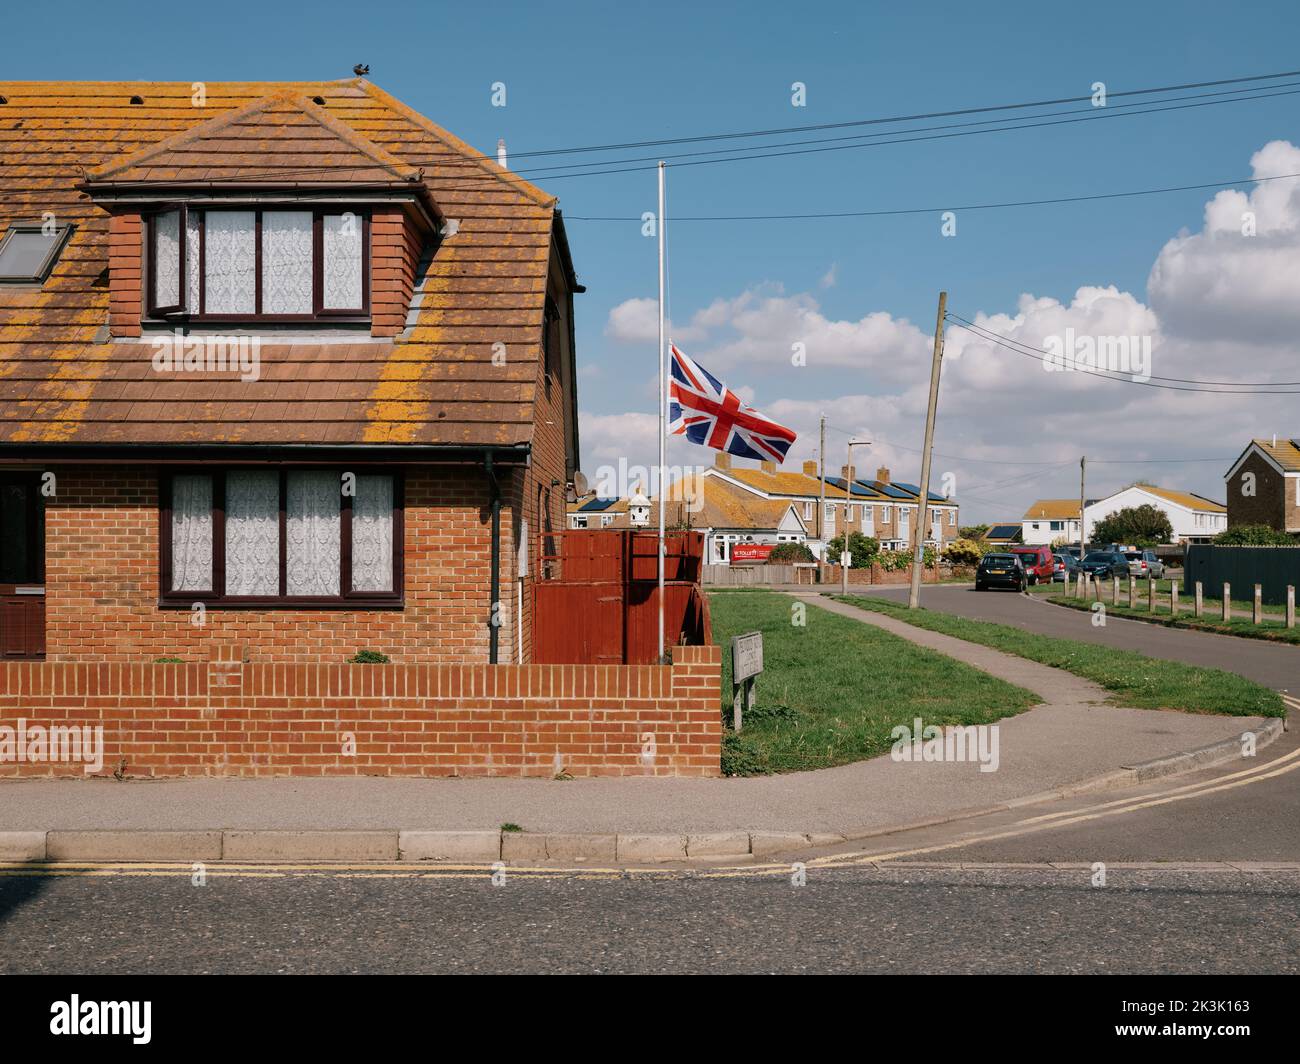 Eine britische Unionsflagge fliegt am halben Mast in Trauer um die Passierung der Königin in einer Wohnsiedlung in einem Vorort Lydd, Sussex, England, Großbritannien - September 2022 Stockfoto